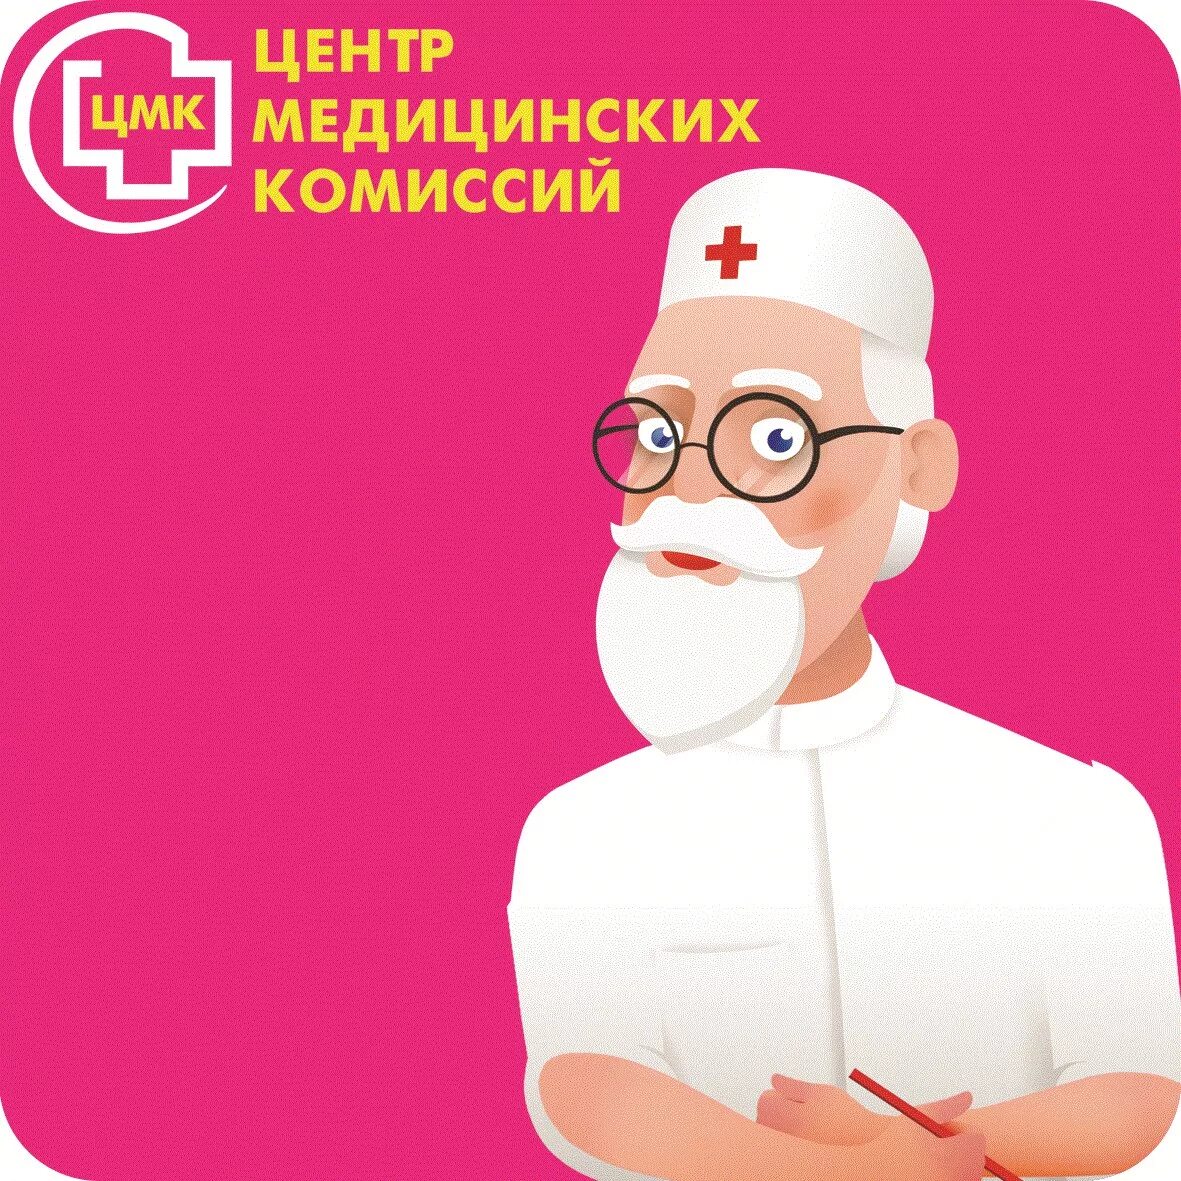 Центр медицинских комиссий Хабаровск реклама. Центр медицинских комиссий реклама. Центр медкомиссий Хабаровск. Центр медицинских комиссий Хабаровск логотип.